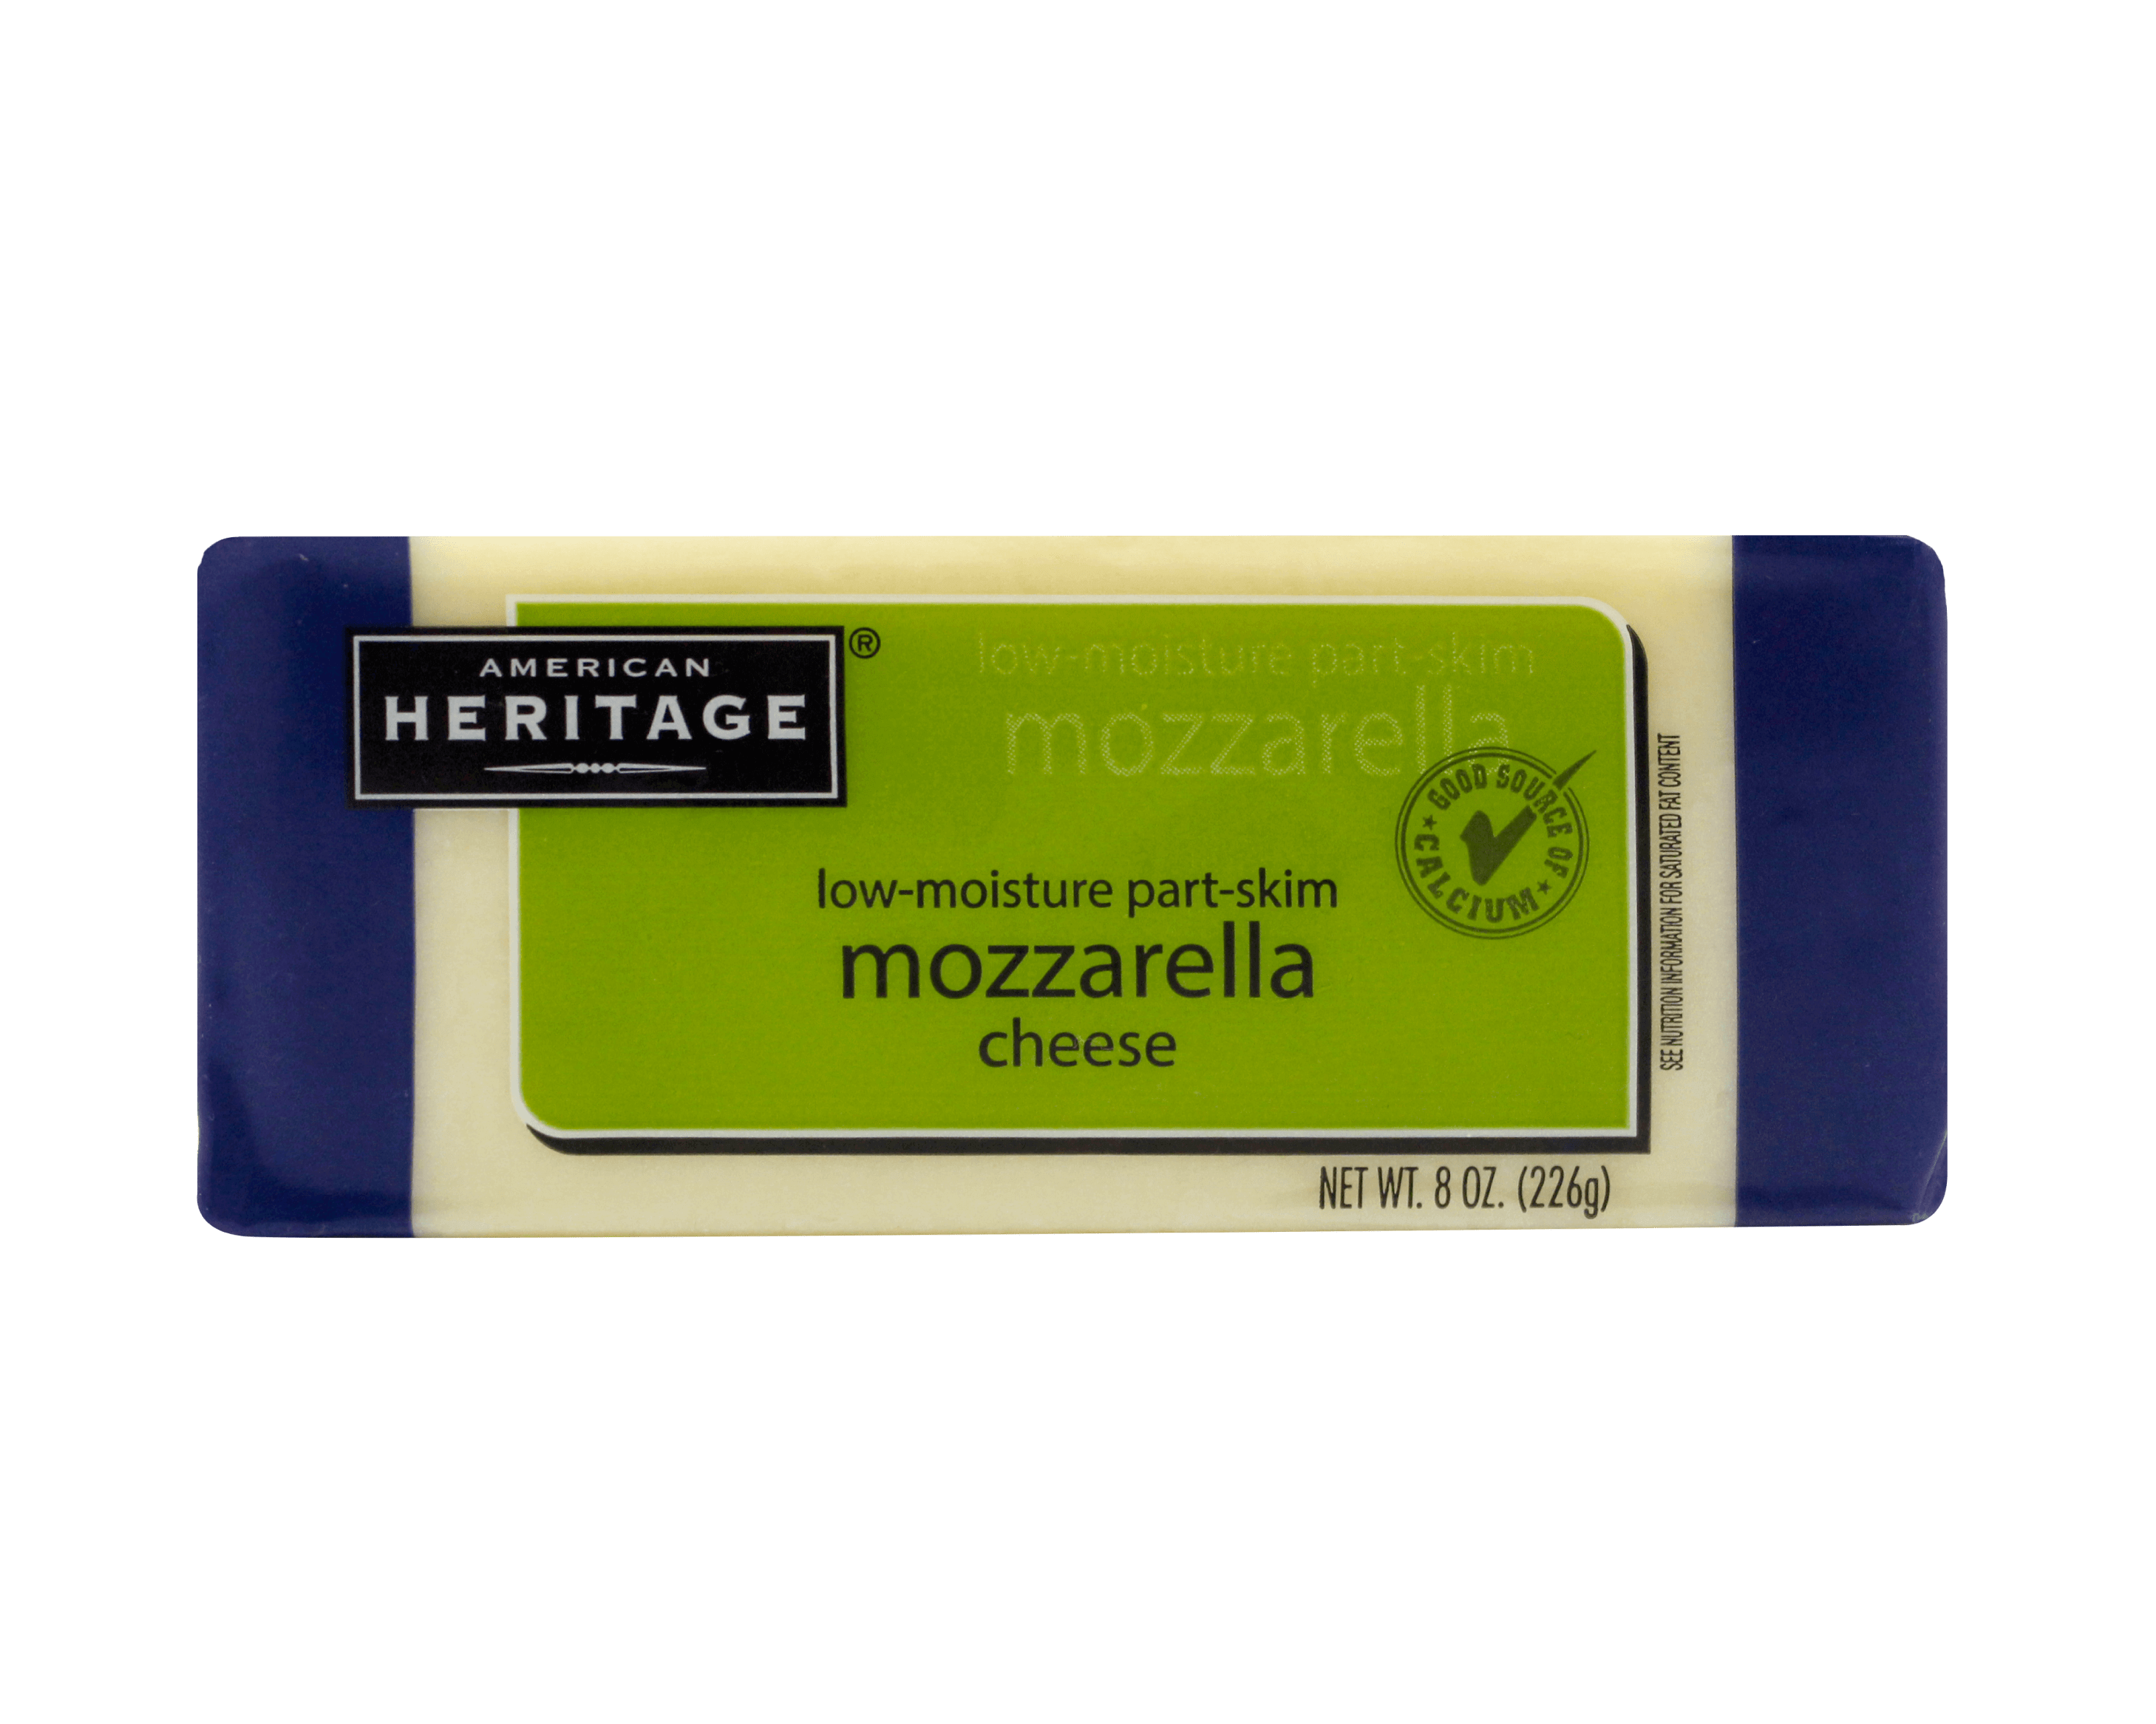 American Heritage Mozzarella Cheese 好焗蒙佐力拉乾酪塊